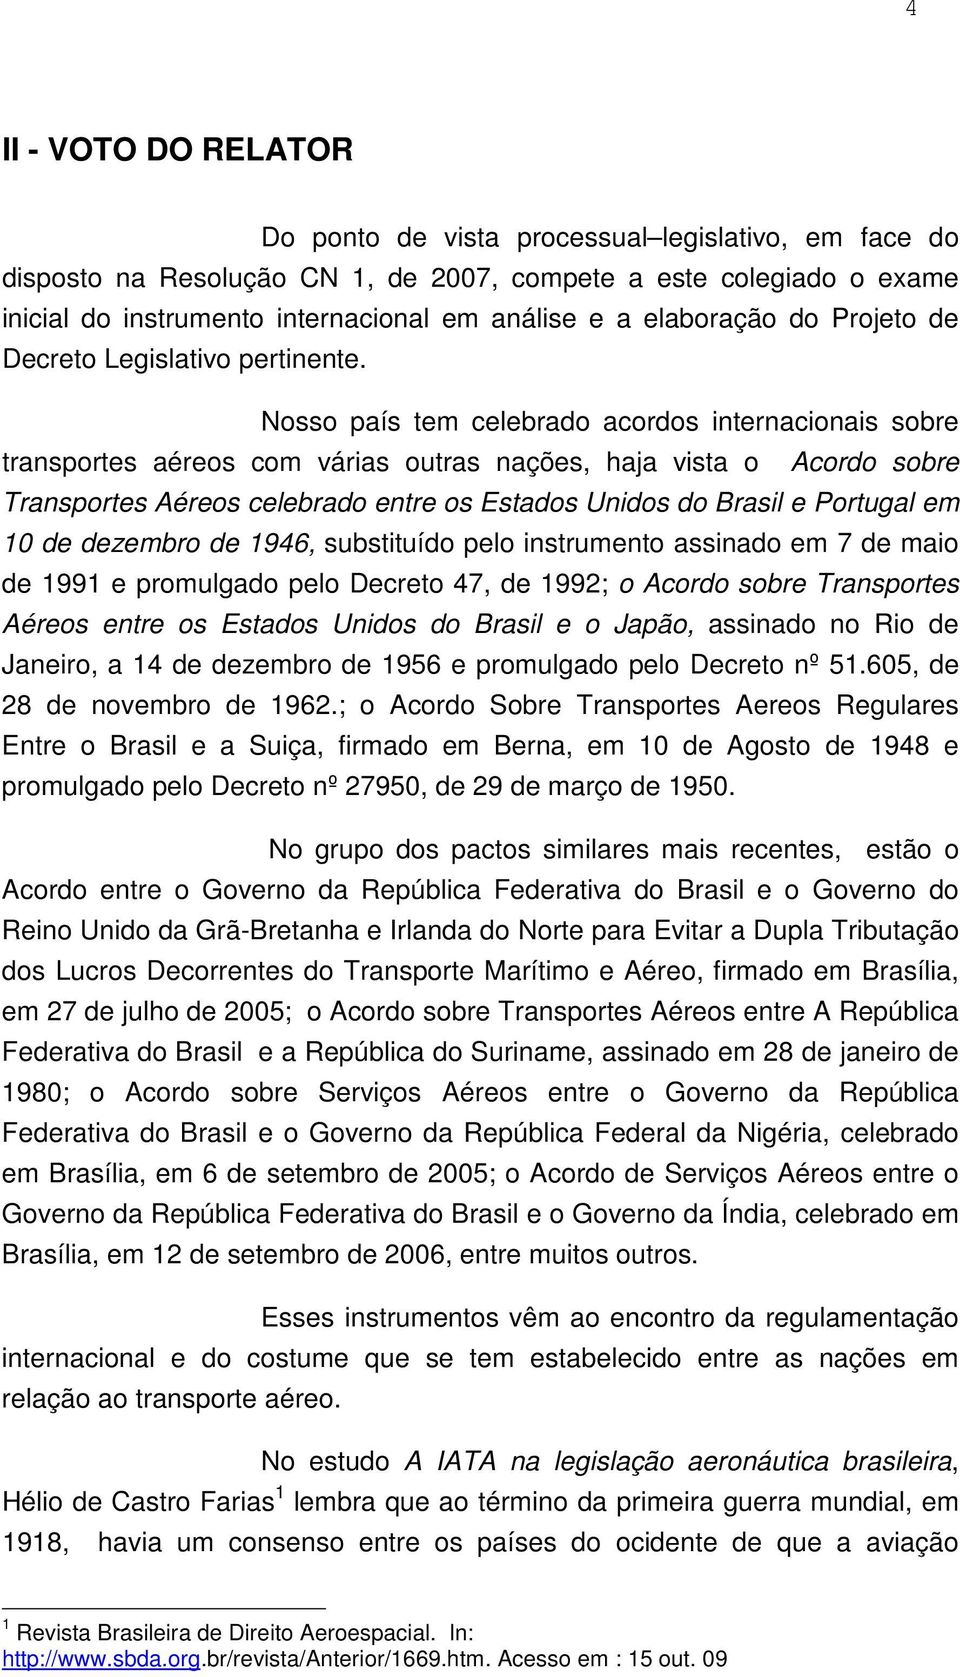 Nosso país tem celebrado acordos internacionais sobre transportes aéreos com várias outras nações, haja vista o Acordo sobre Transportes Aéreos celebrado entre os Estados Unidos do Brasil e Portugal